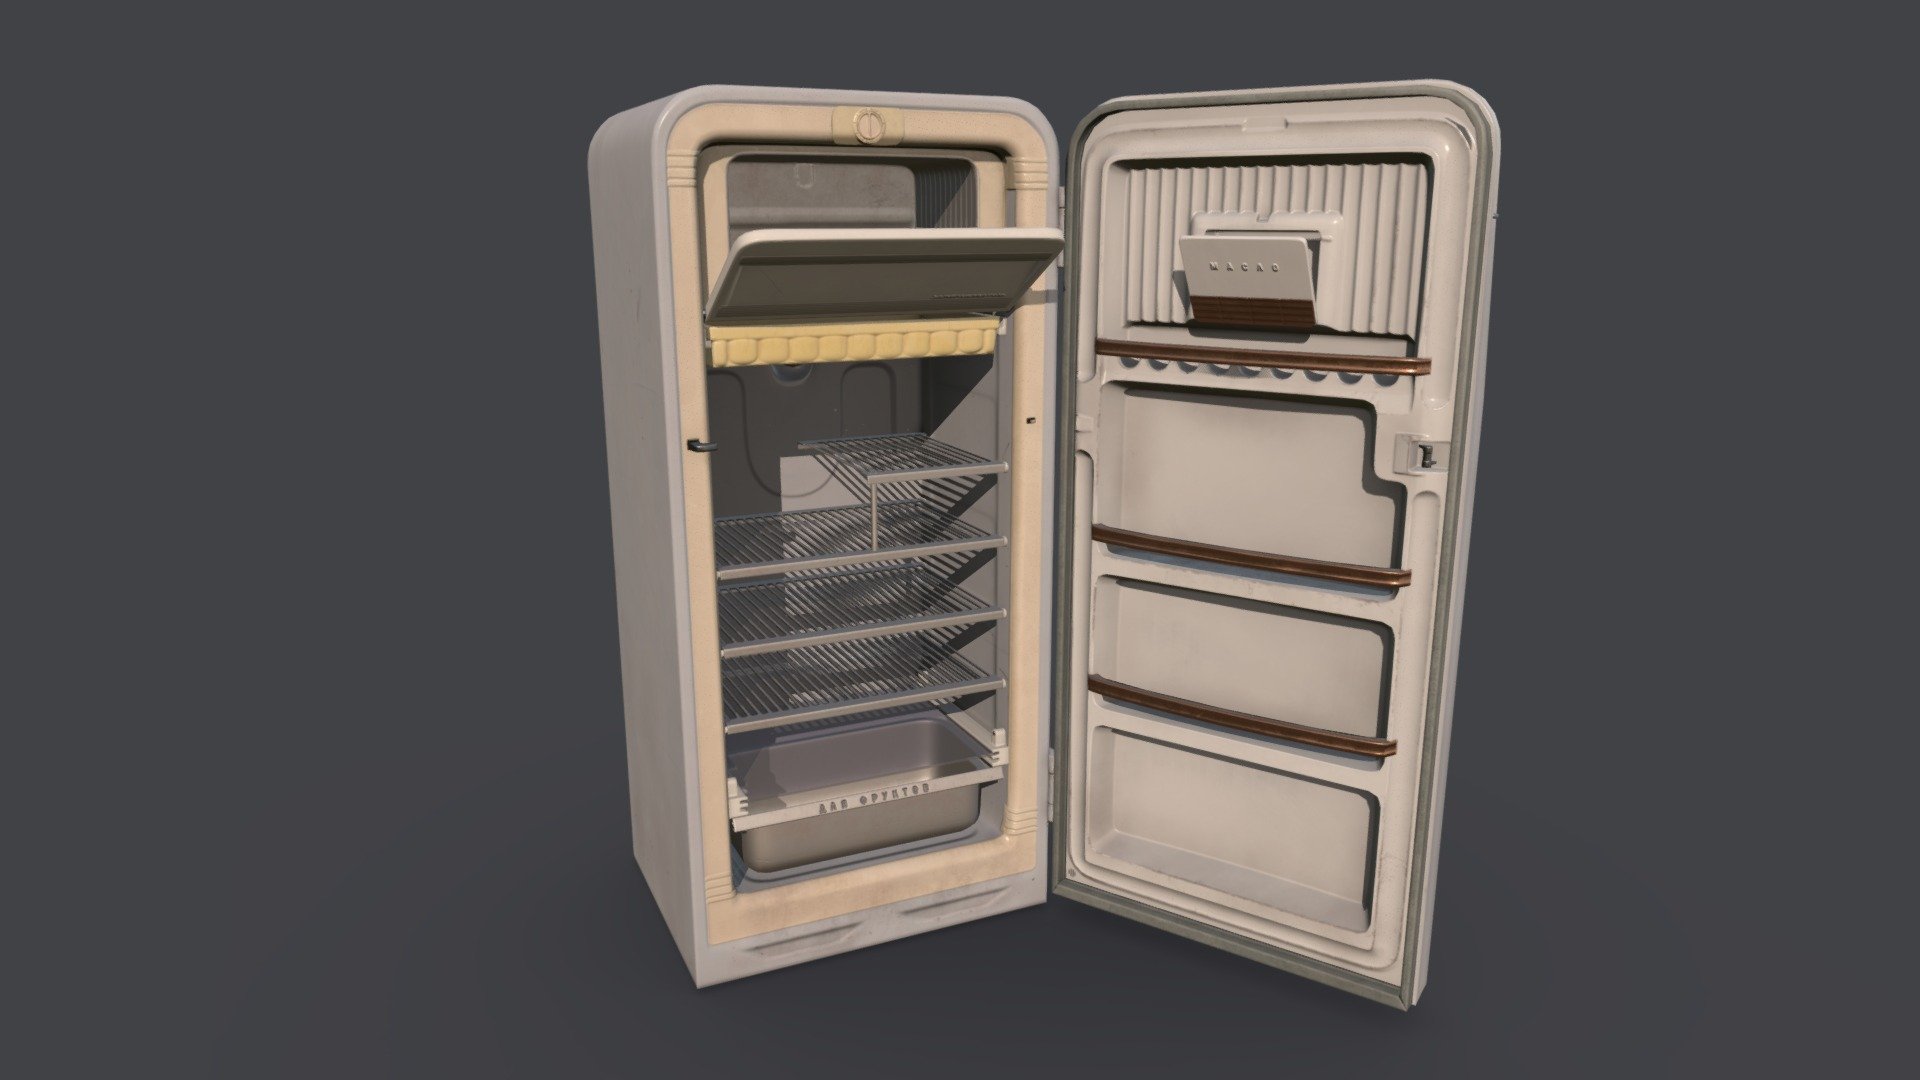 Soviet fridge - Zil Fridge - 3D model by alpenfant 3d model